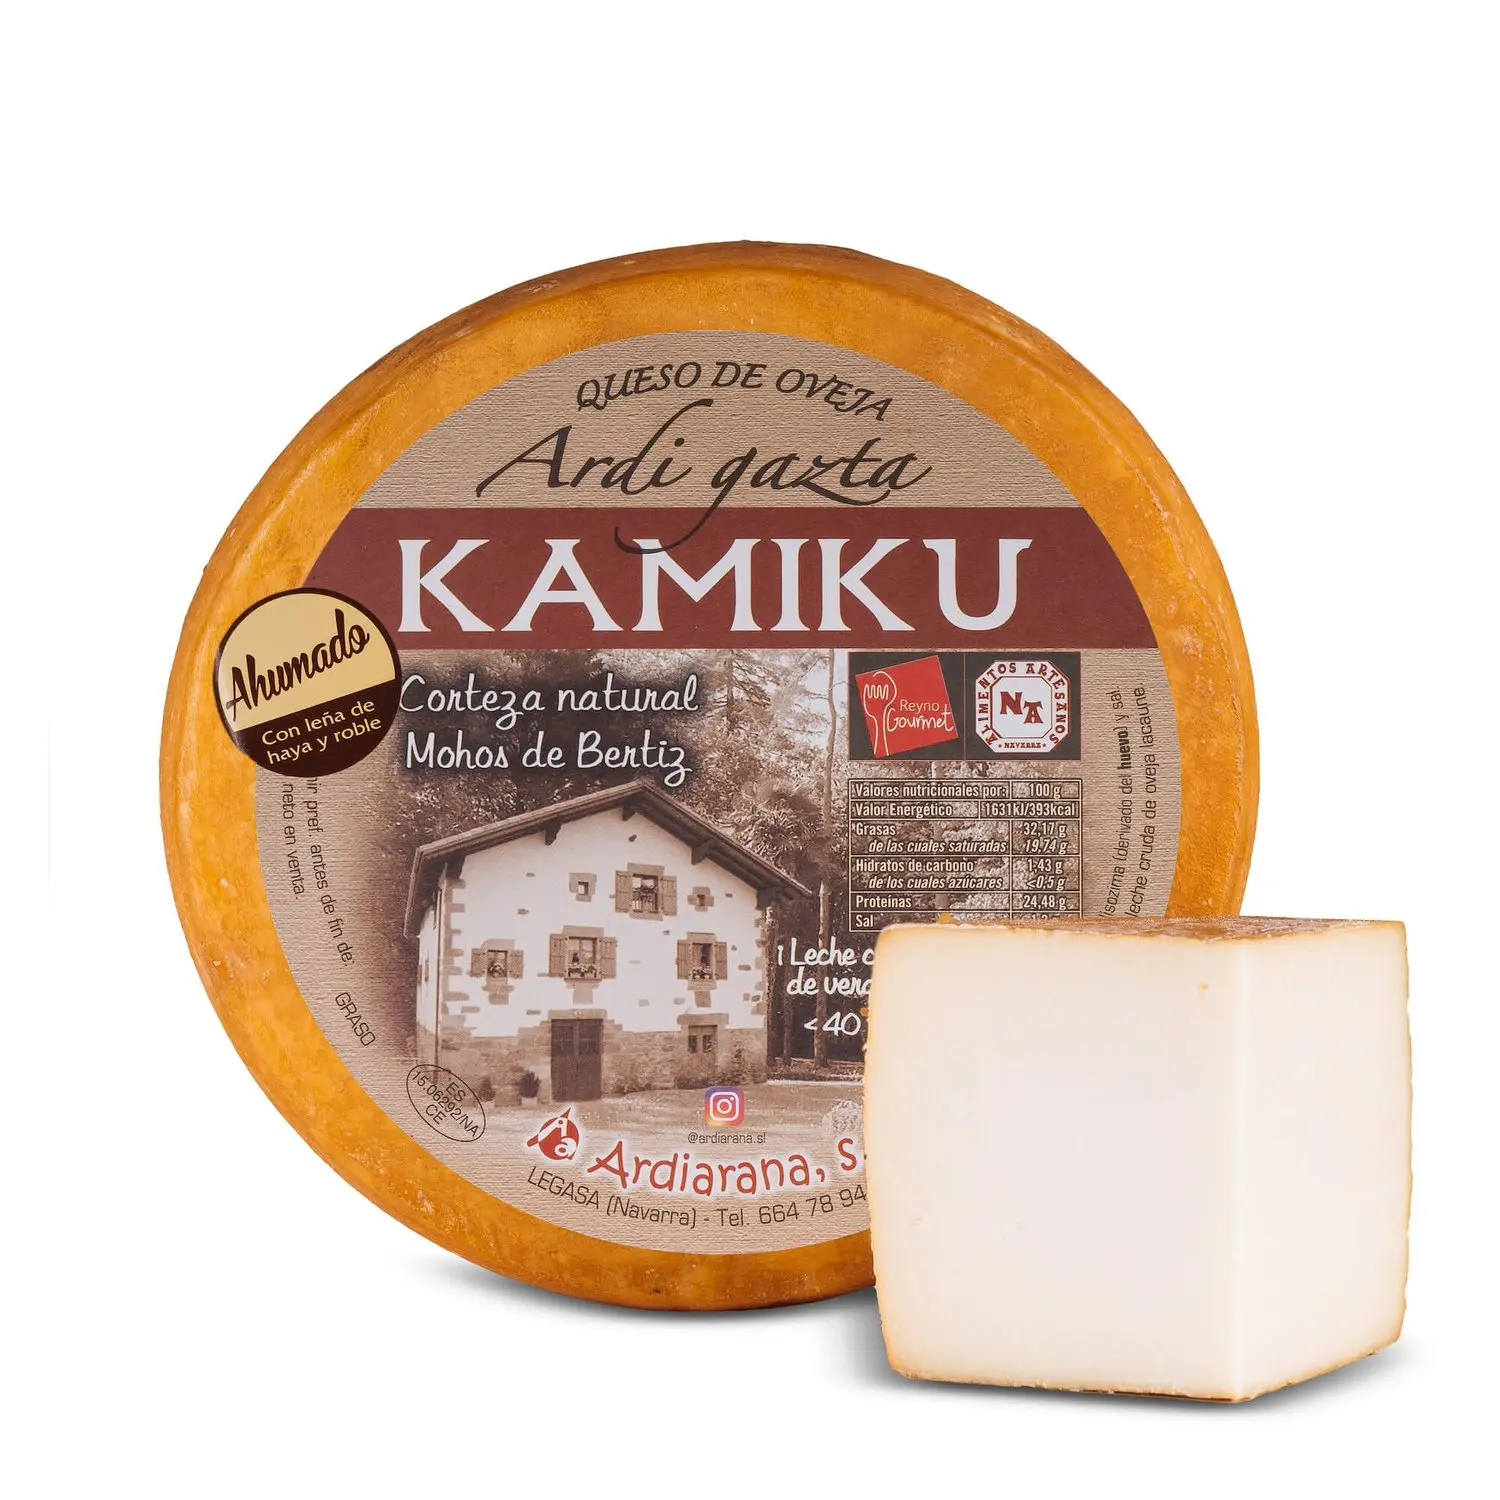 queso kamiku - Qué tipo de queso es el fresco